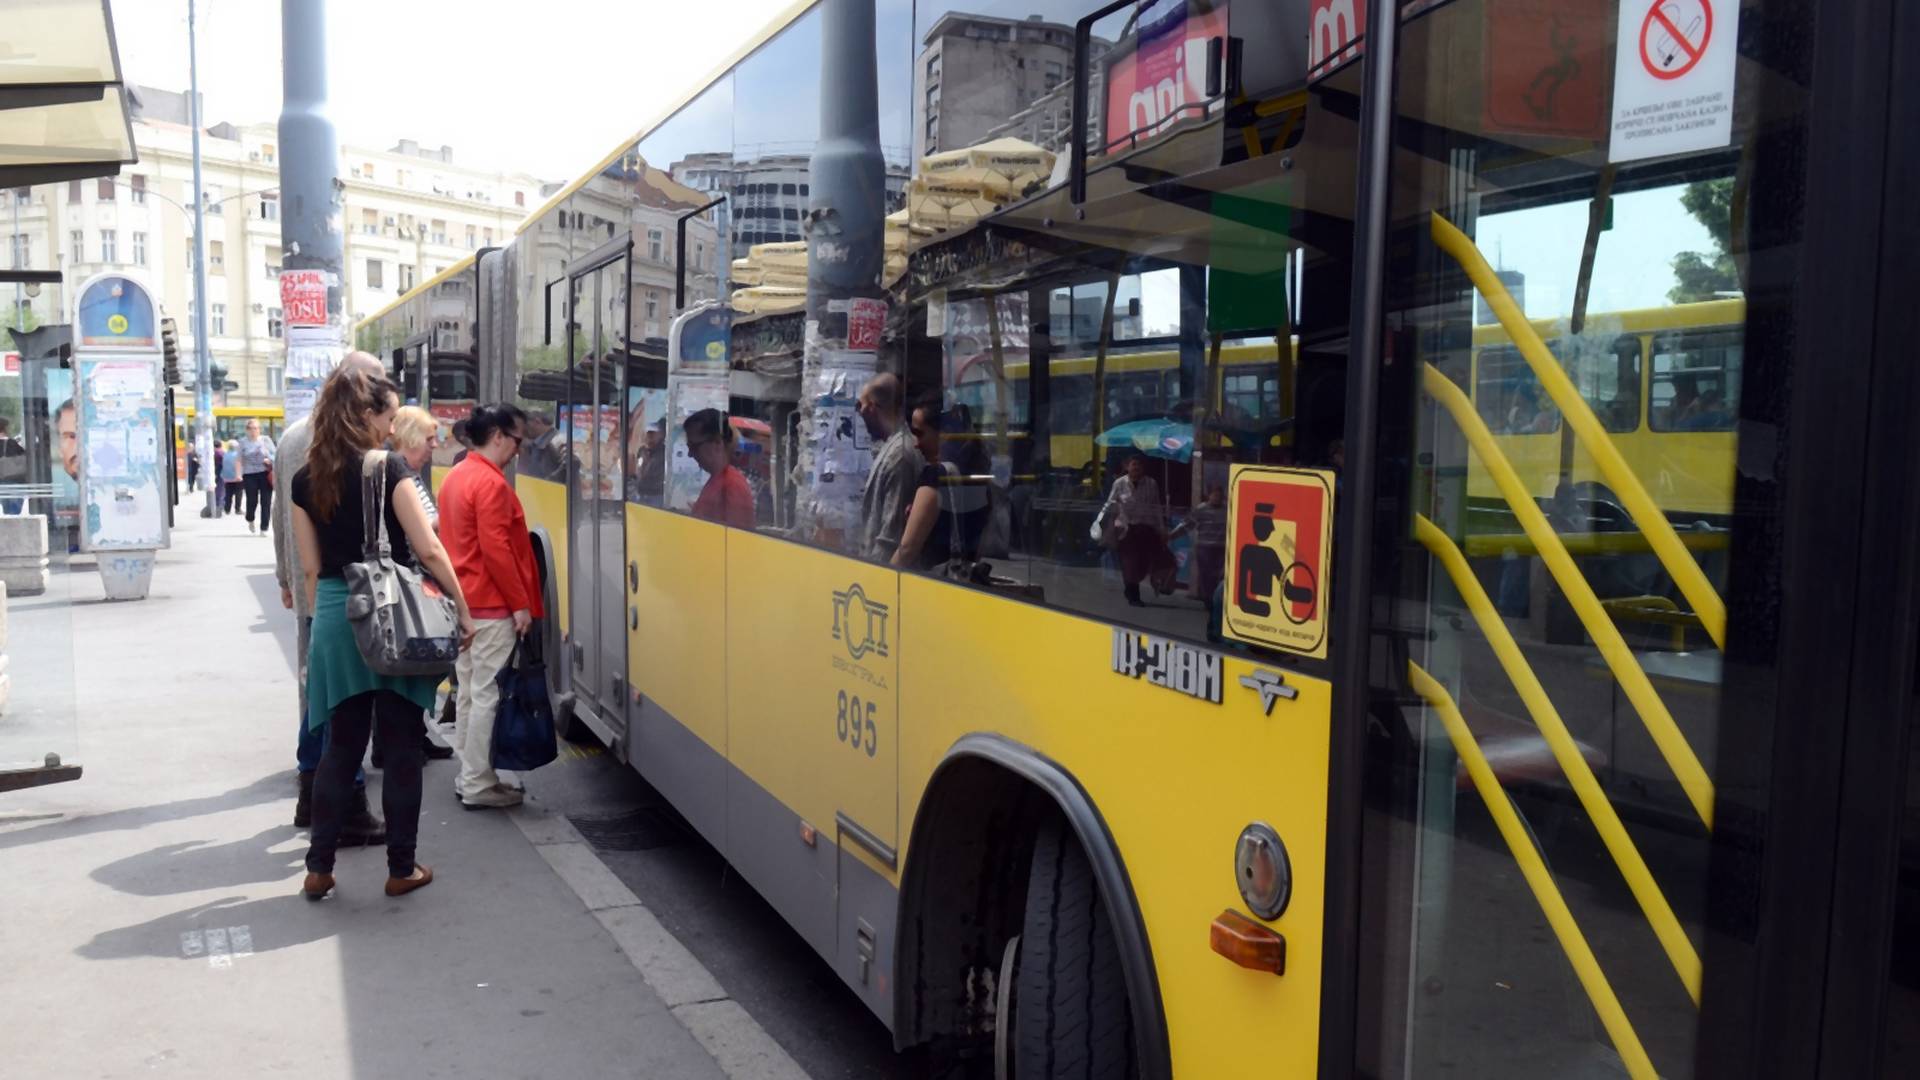 Vozač iz autobusa 74 postao je glavna faca gradskog prevoza iako se razlog nekima ne sviđa